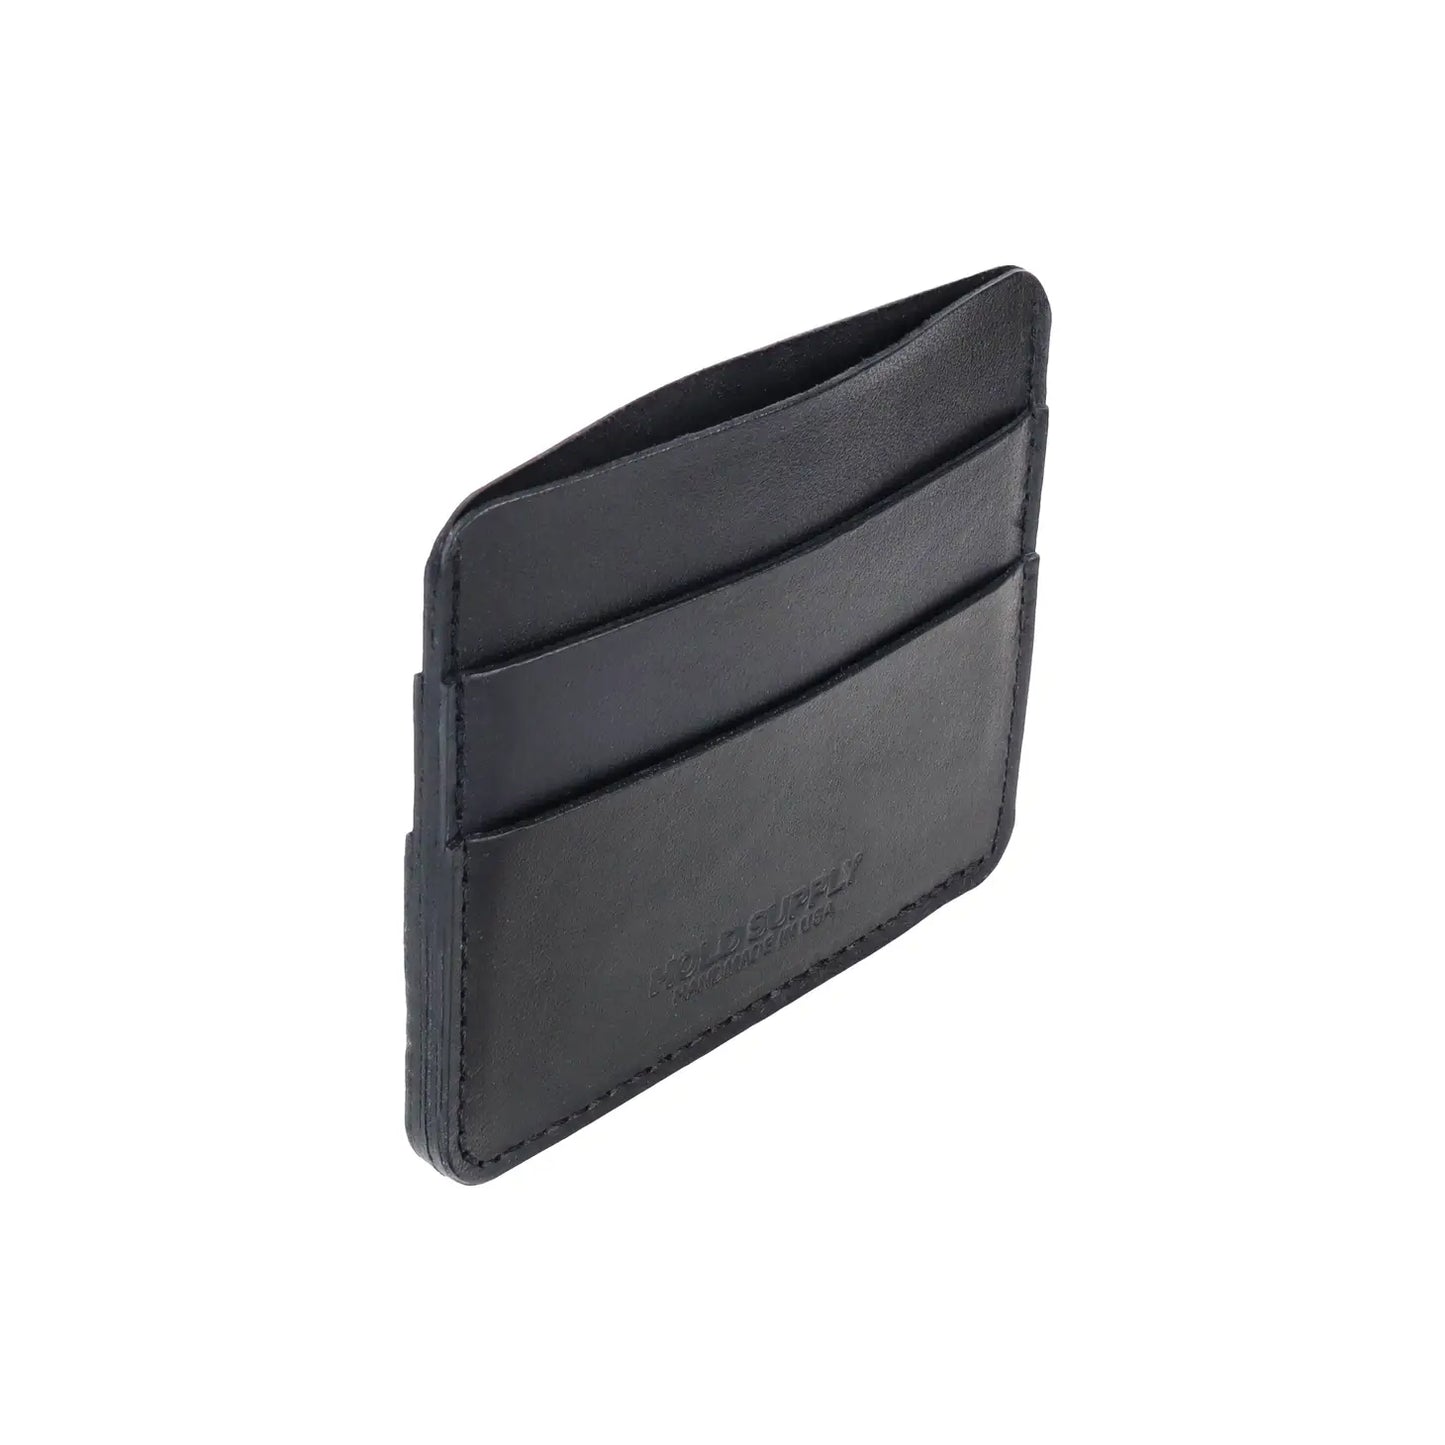 Cardholder Leather Wallet 5 POCKET (Black, Brown)